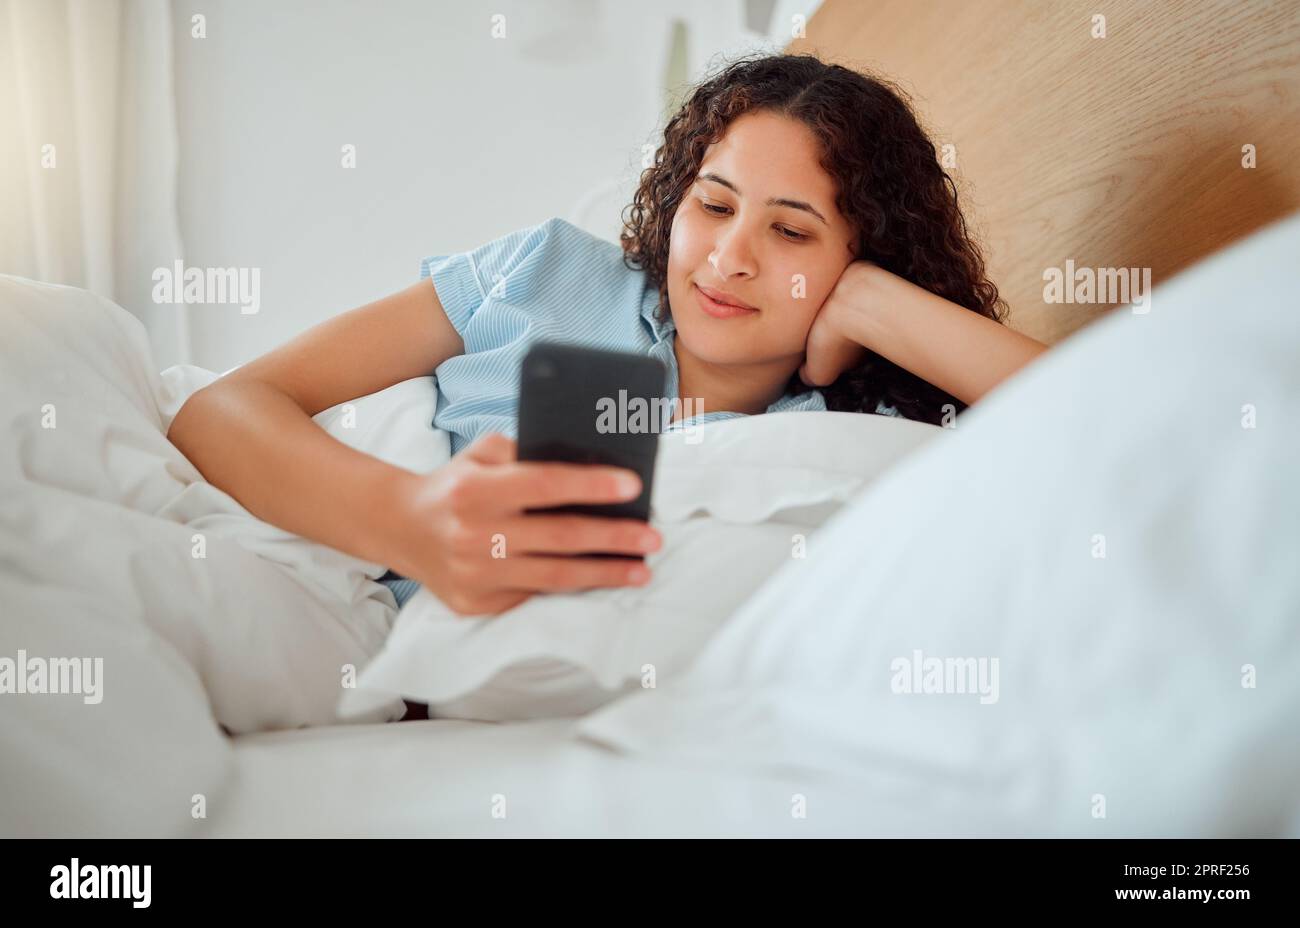 Eine Frau, die SMS liest, Nachrichten abruft und das Telefon hält, während sie sms liest und morgens wach in ihrem Bett liegt. Glückliche, zufriedene und lächelnde Frau, die ein Spiel spielt, im Internet oder in sozialen Medien surft Stockfoto